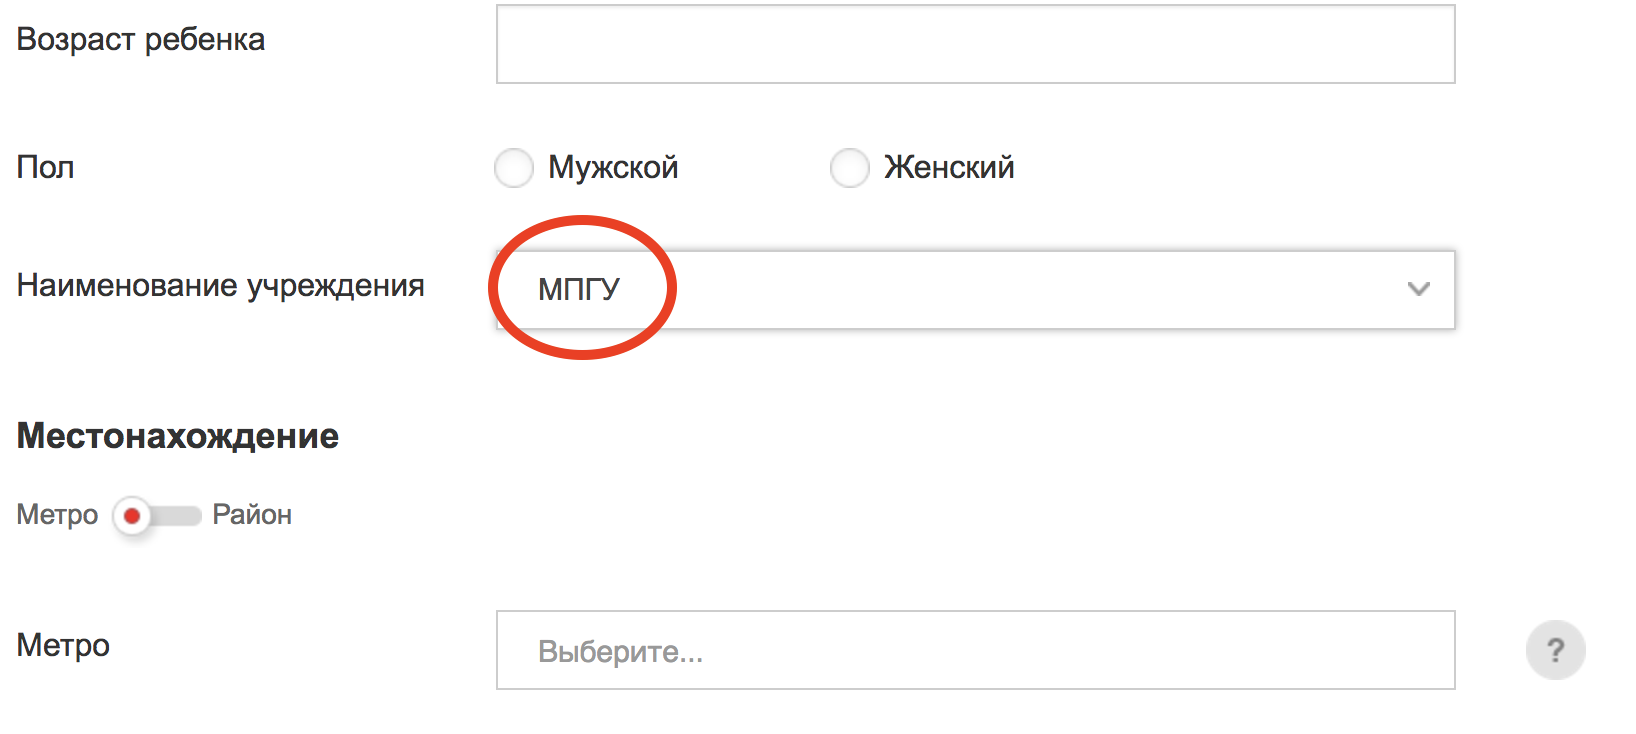 (скриншот с сайта mos.ru)